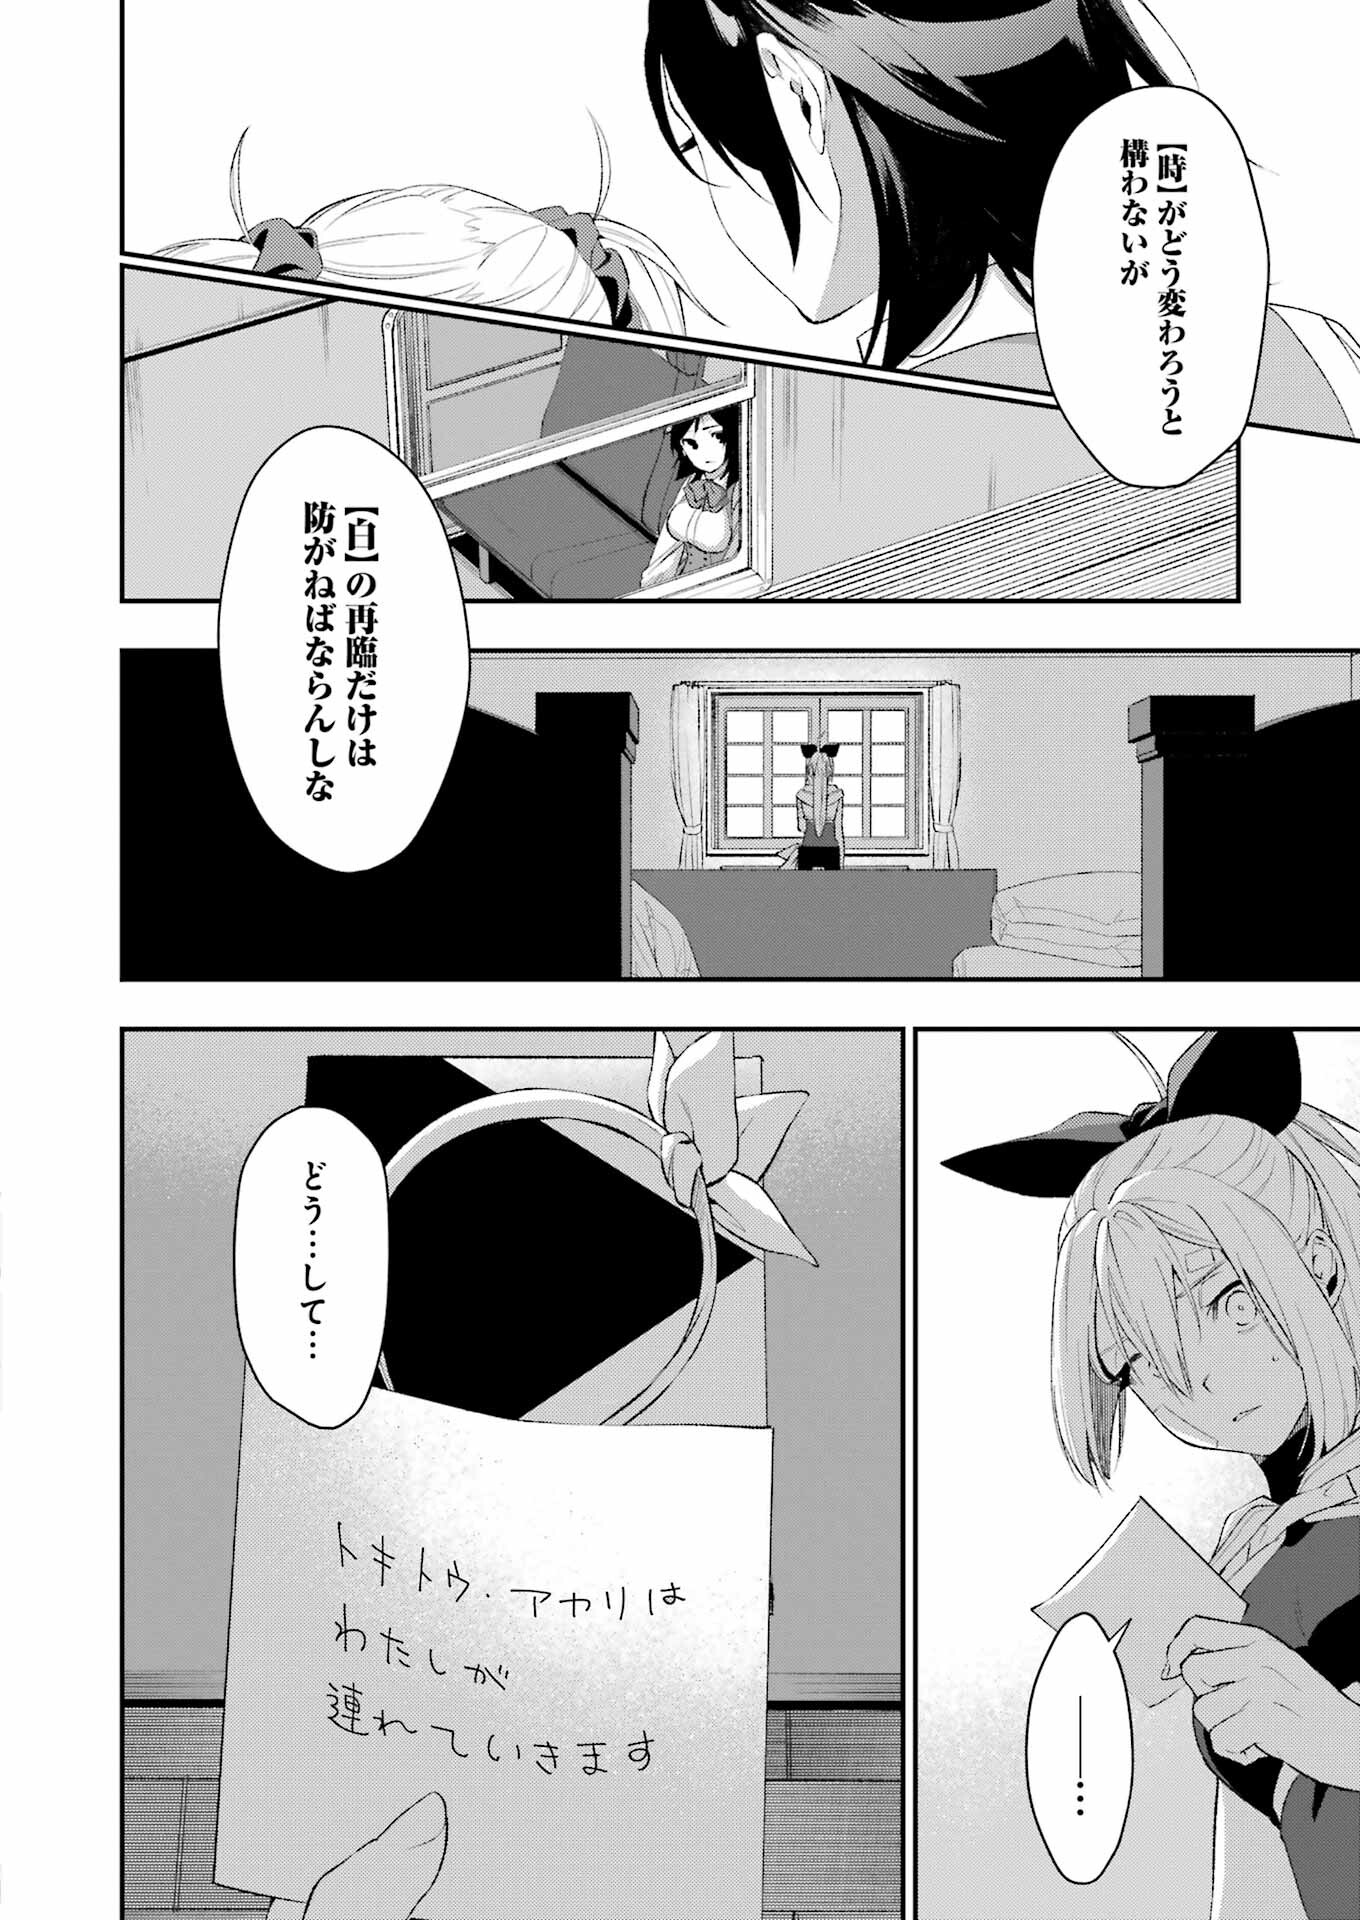 Shokei Shoujo no Ikiru Michi - Chapter 46 - Page 22